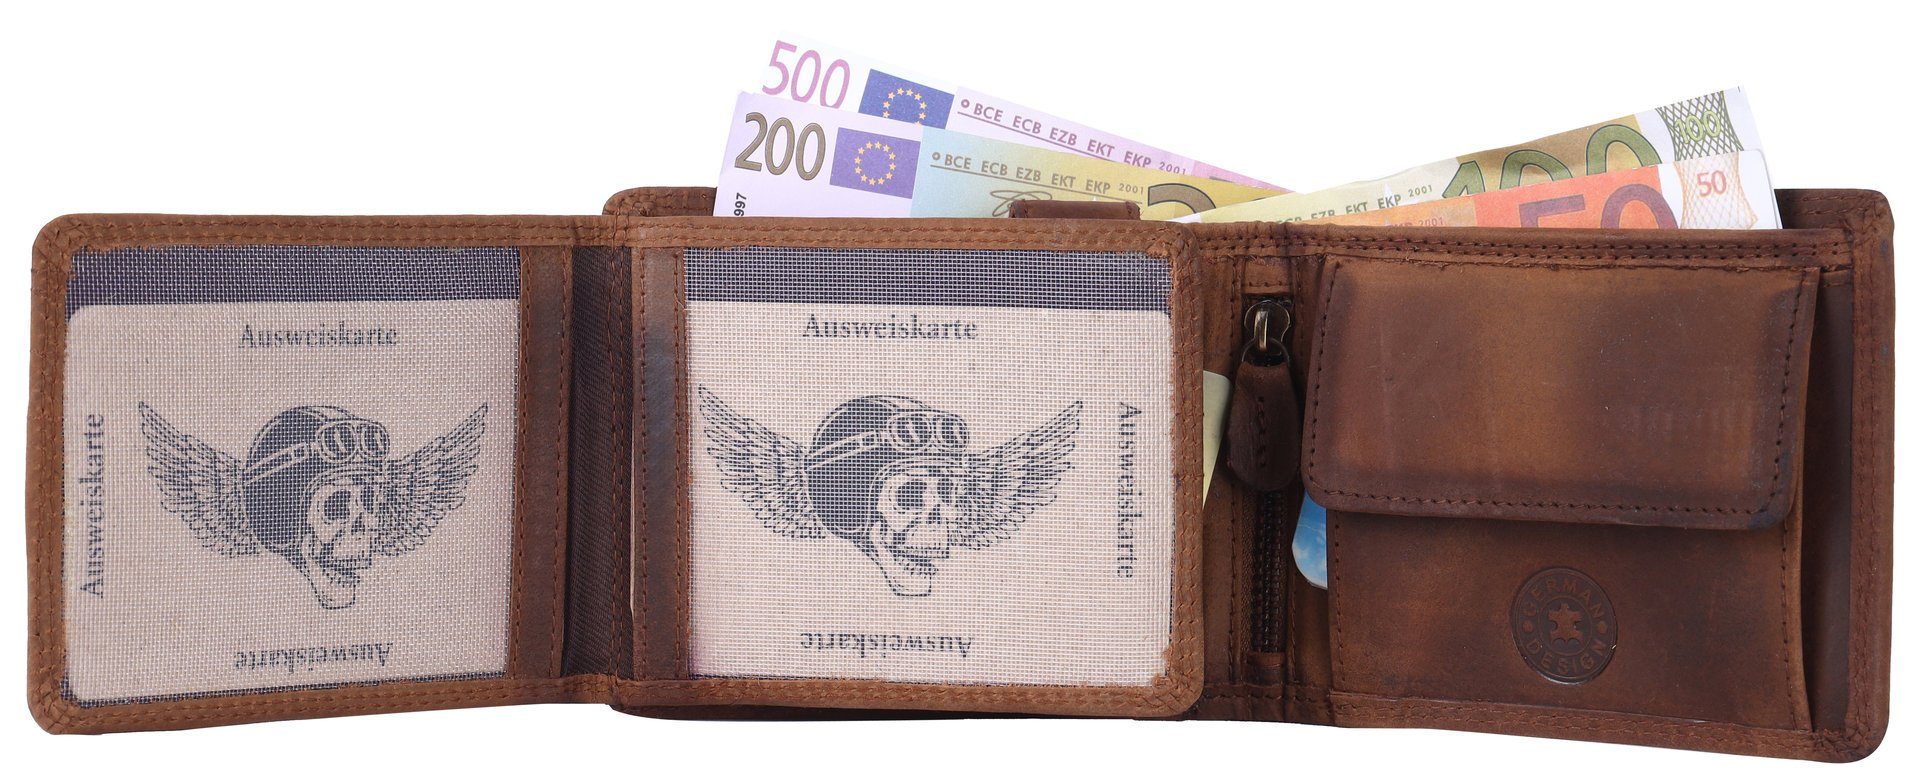 Lederbörse Herren mit Leder Brieftasche Geldbörse Portemonnaie, Männerbörse Münzfach RFID SHG Schutz Börse Büffelleder